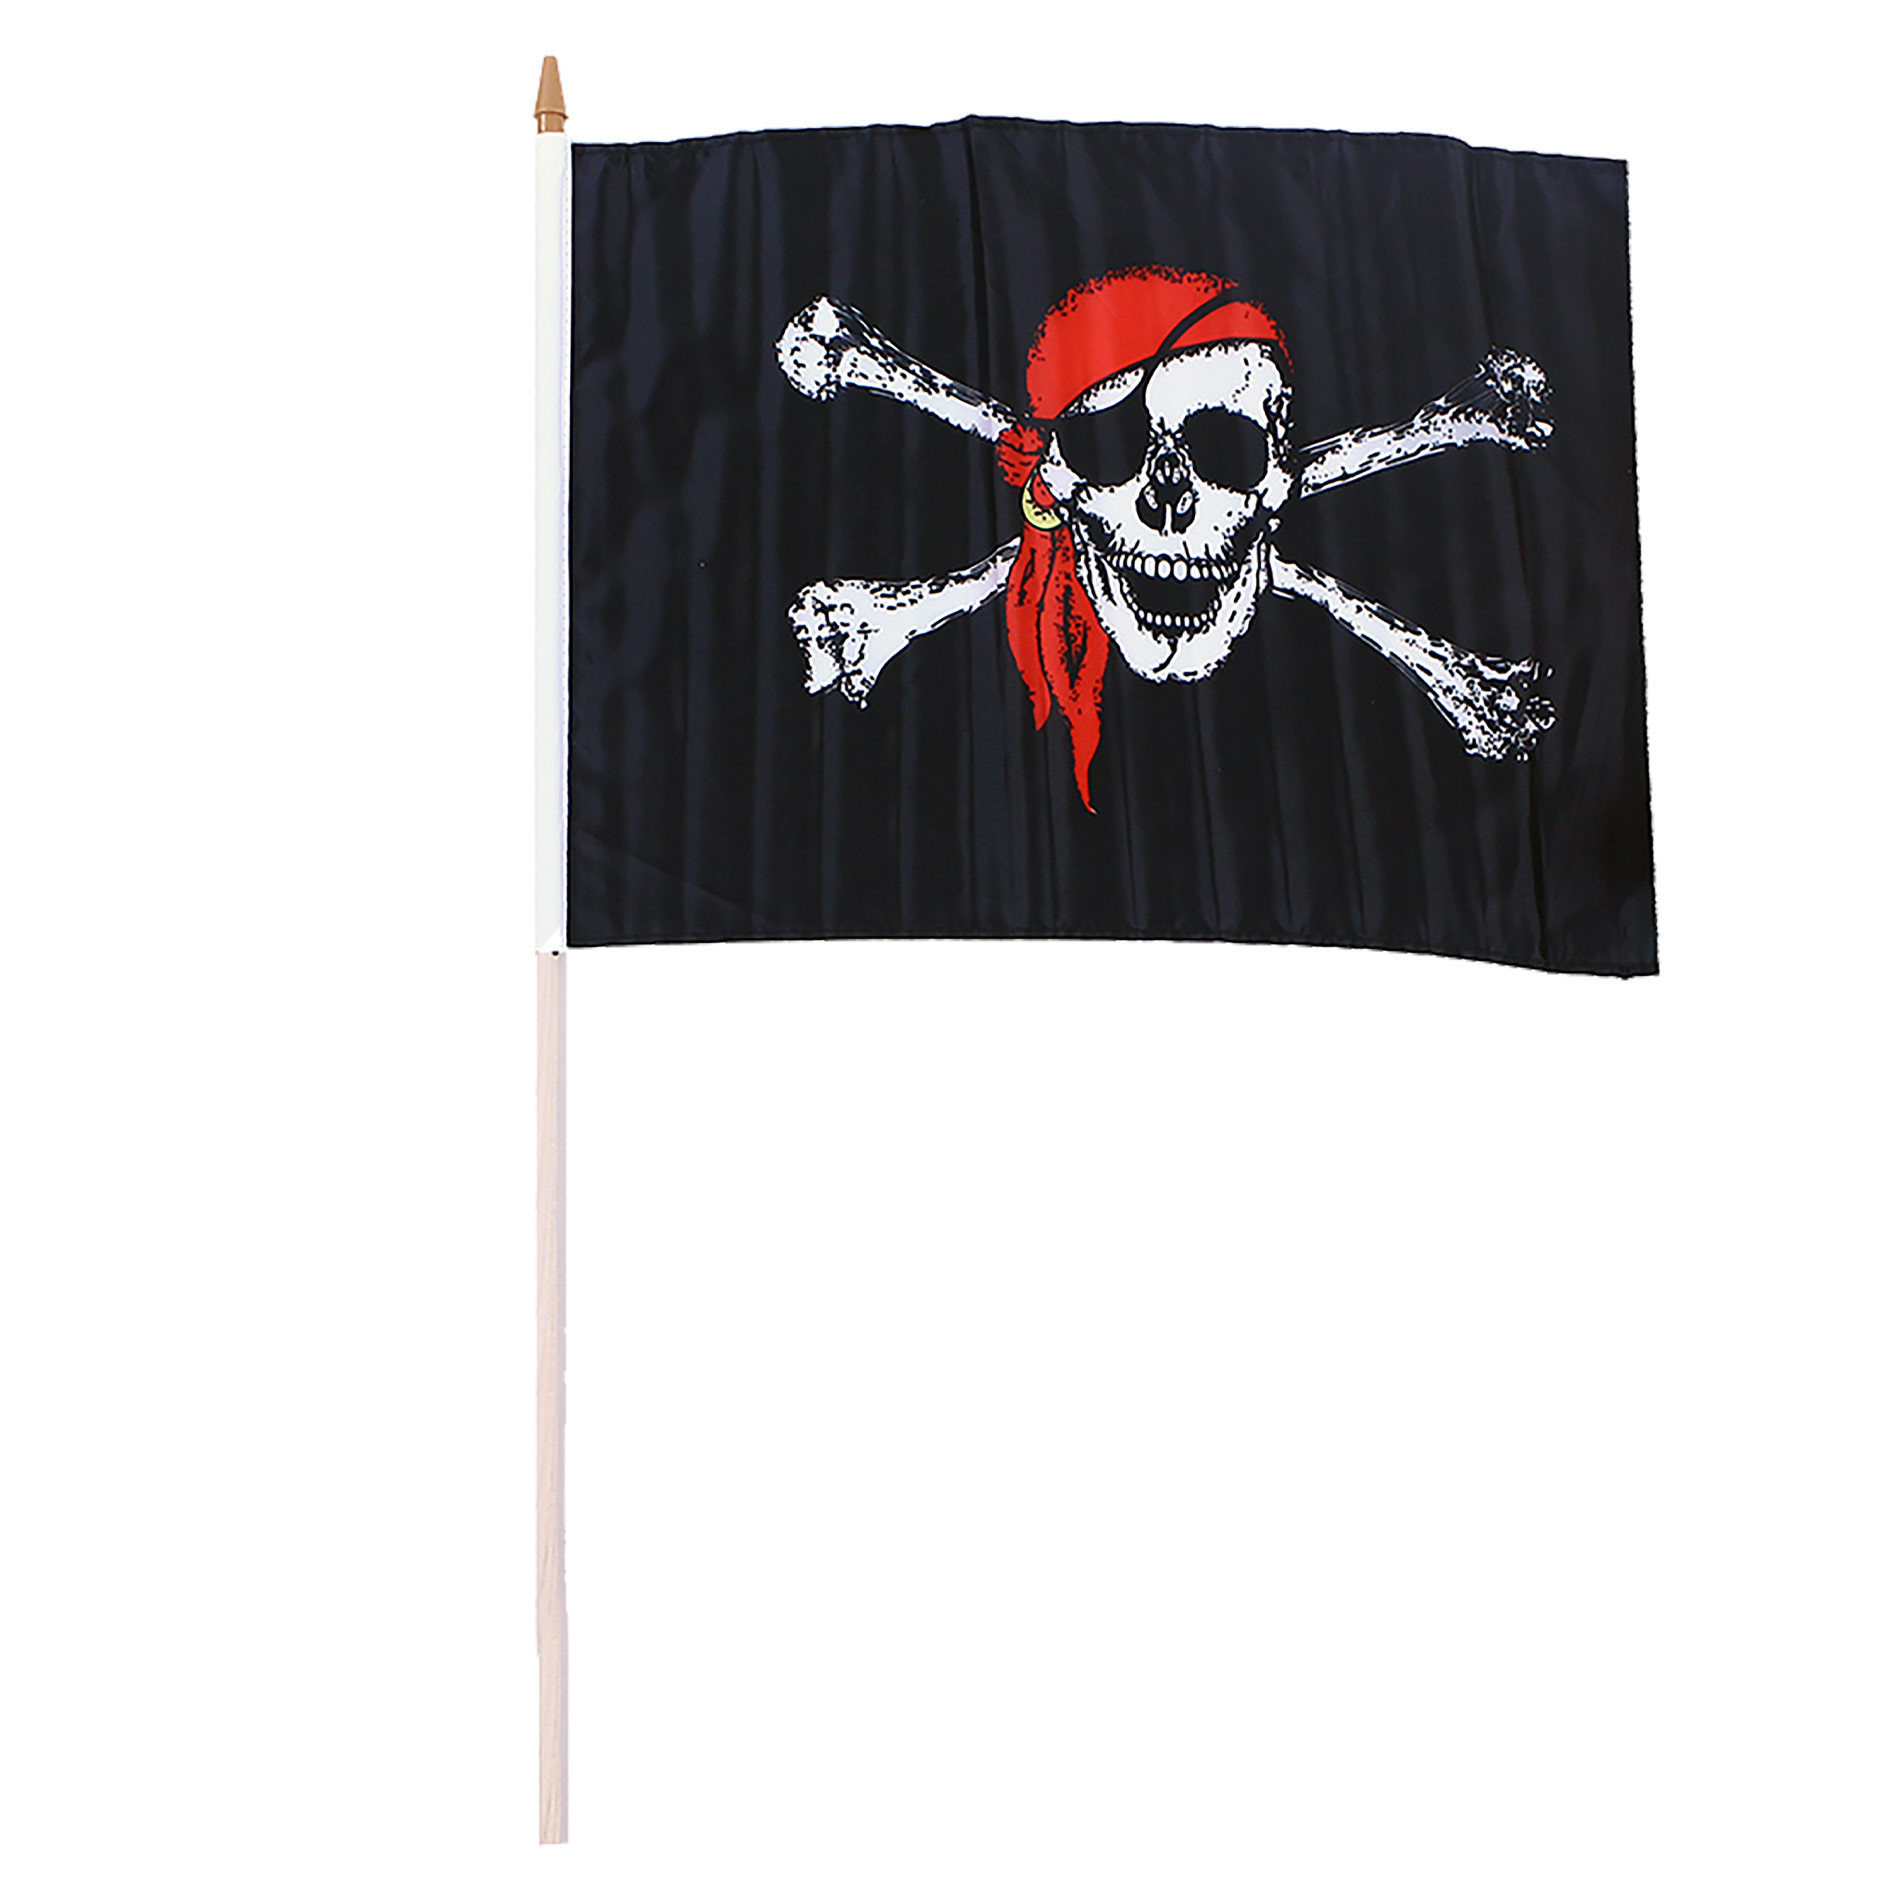 Vlajka pirátská 47x30 cm